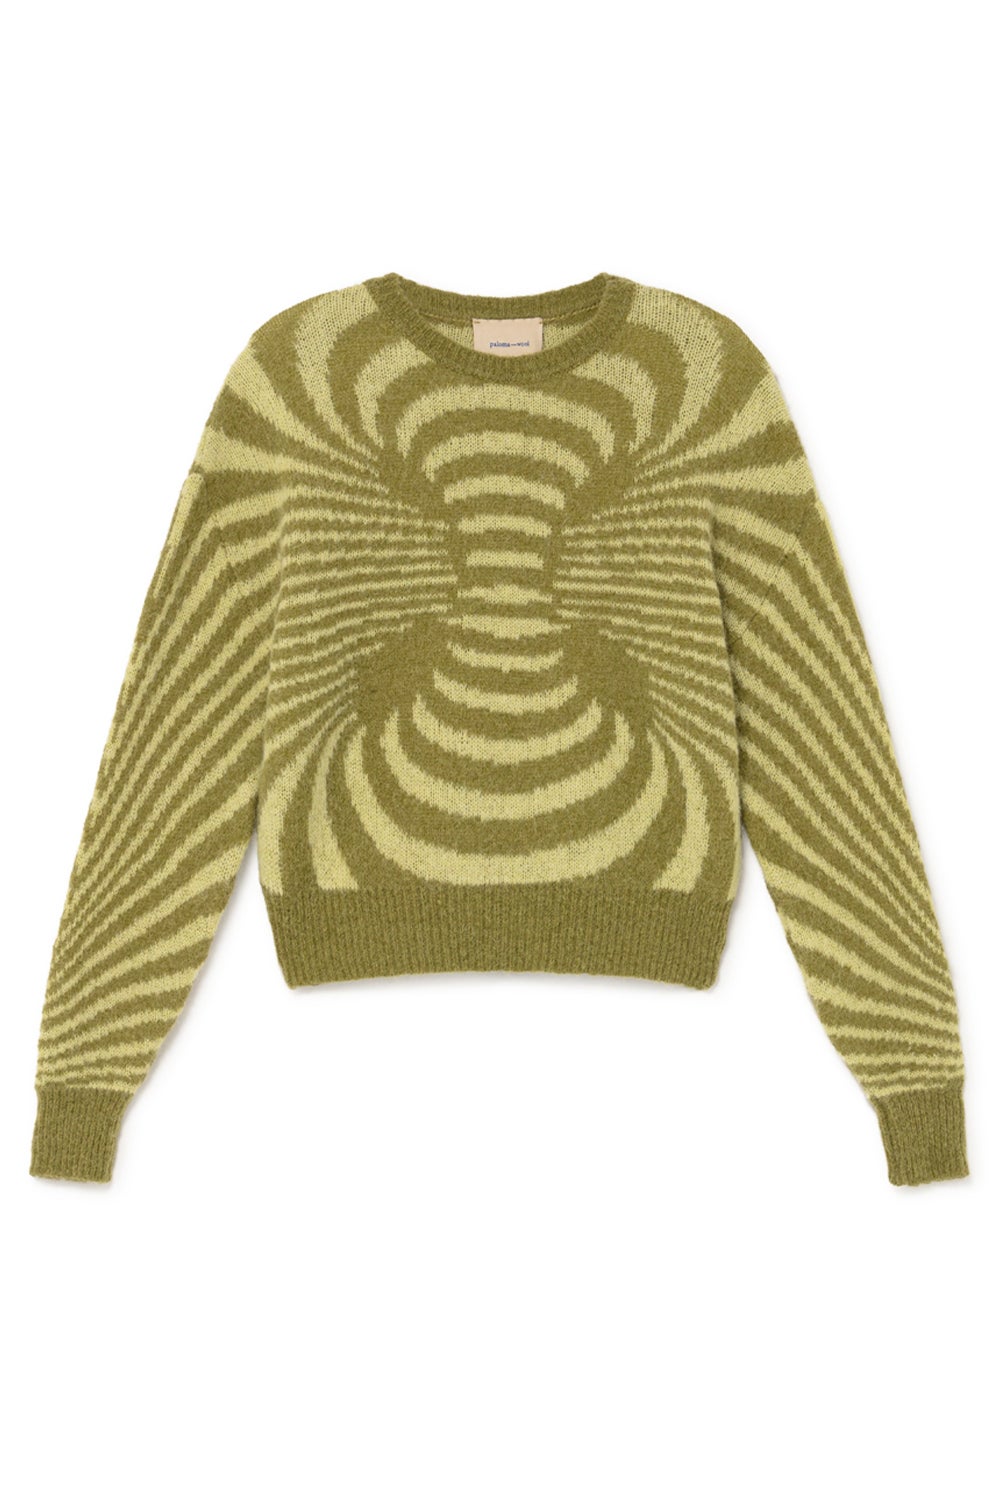 Paloma Wool Matrix Sweater